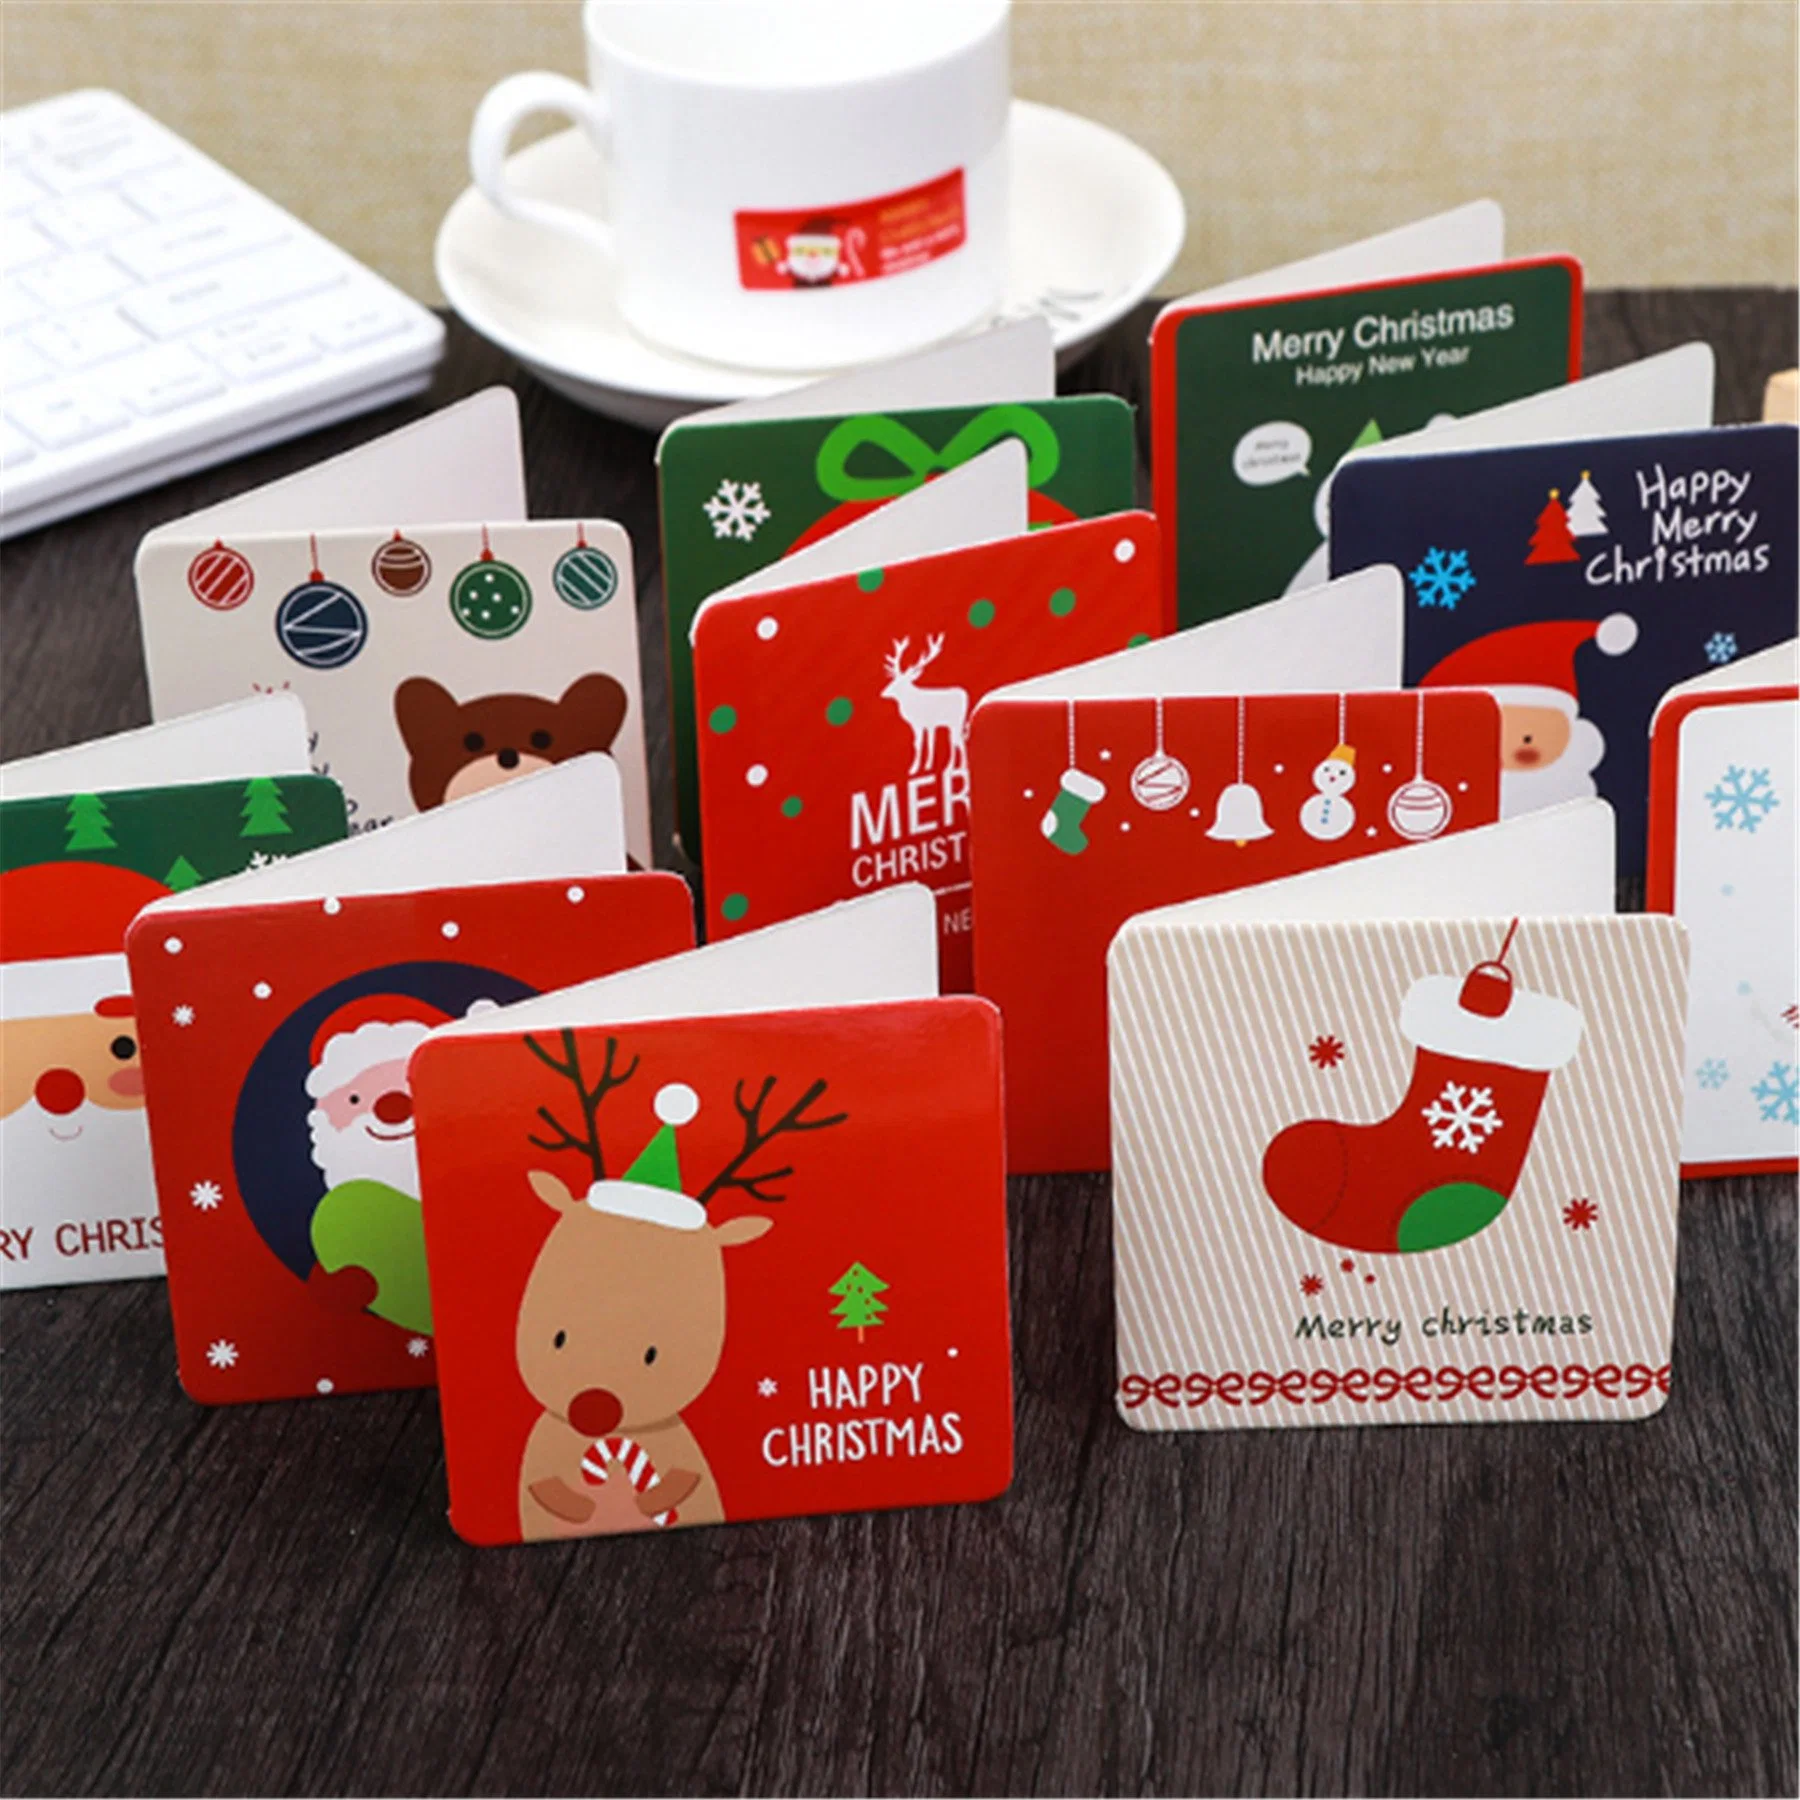 Christmas Labels Christmas Greeting Cards Christmas Gift Tags